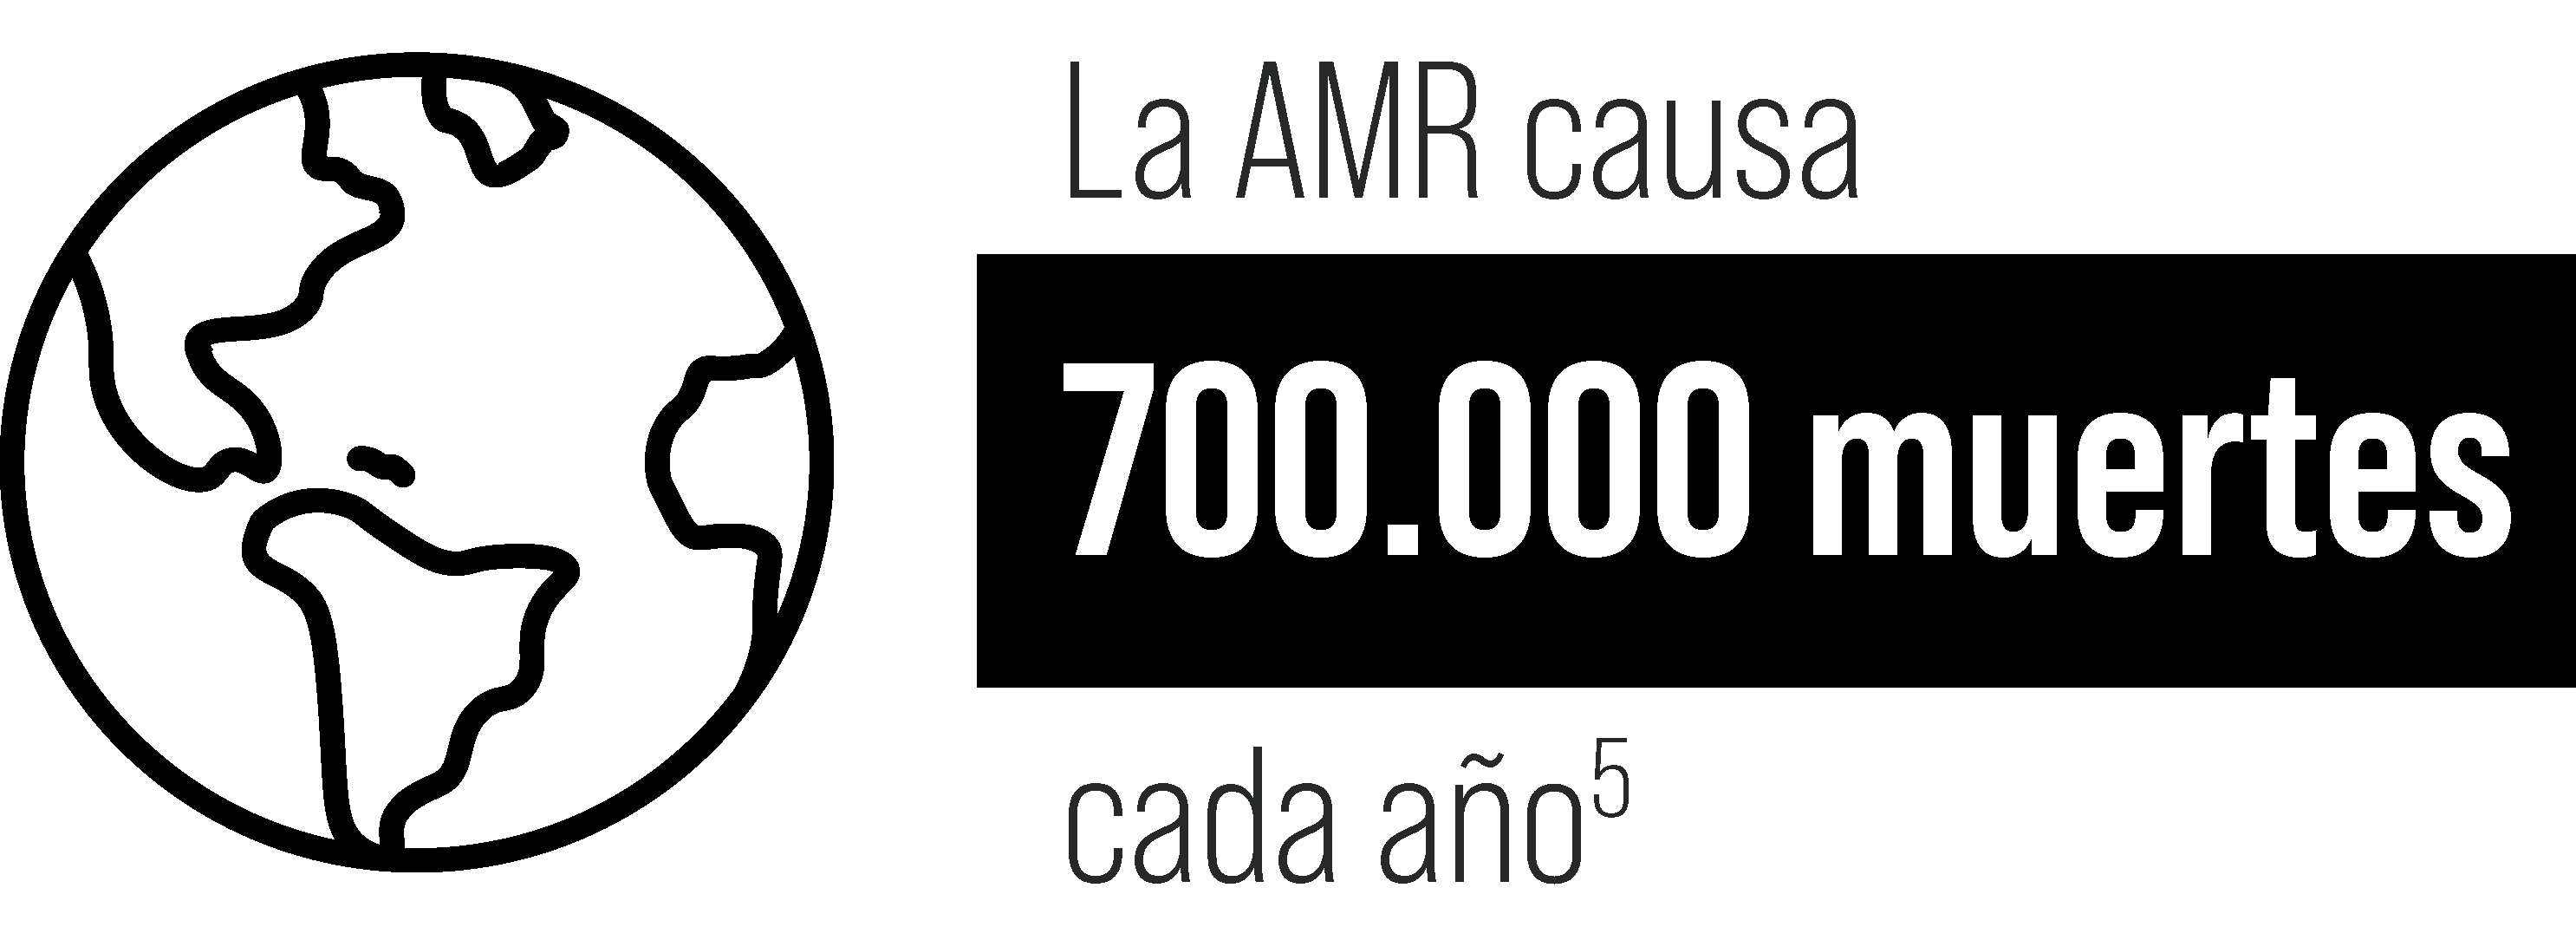 La AMR causa 700.000 muertes cada año